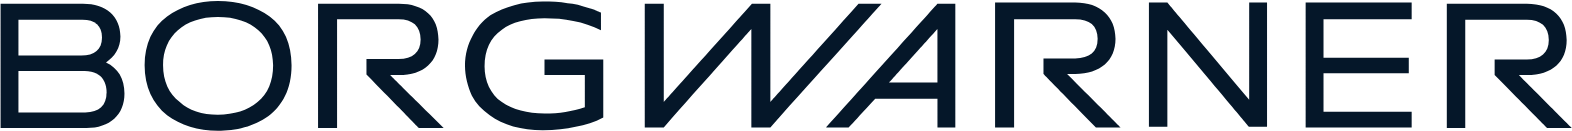 BorgWarner logo large (transparent PNG)